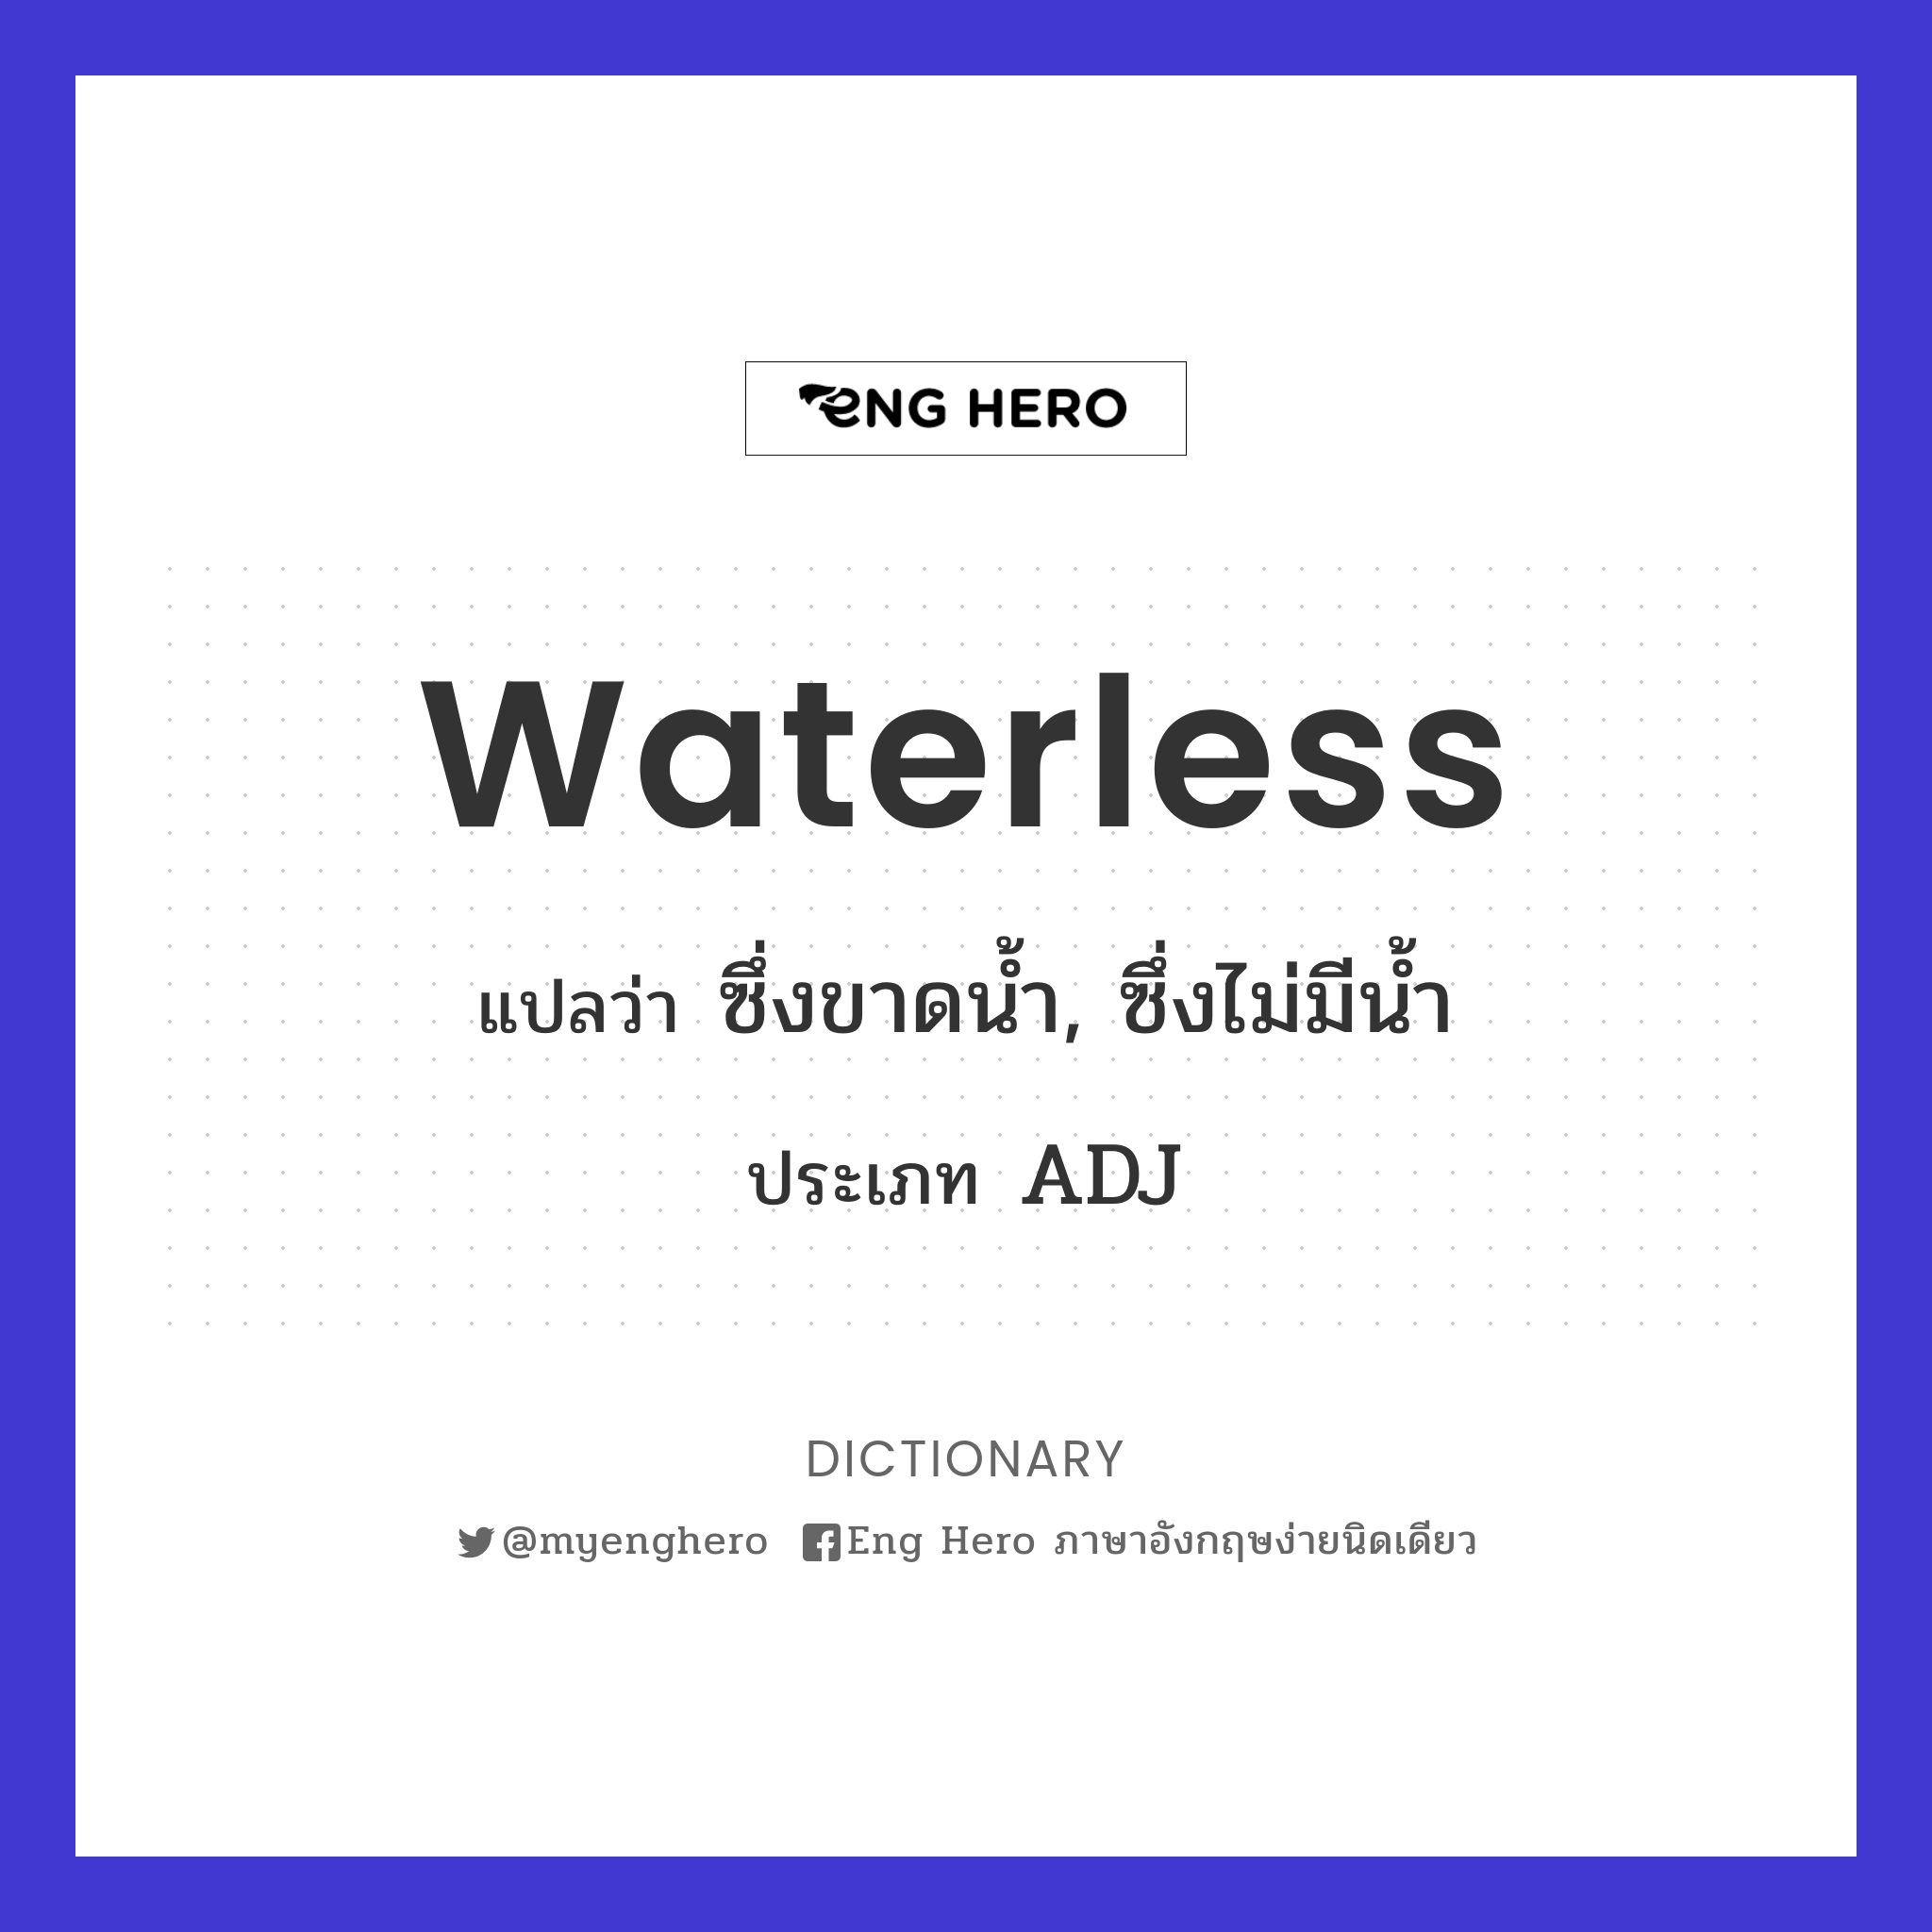 waterless